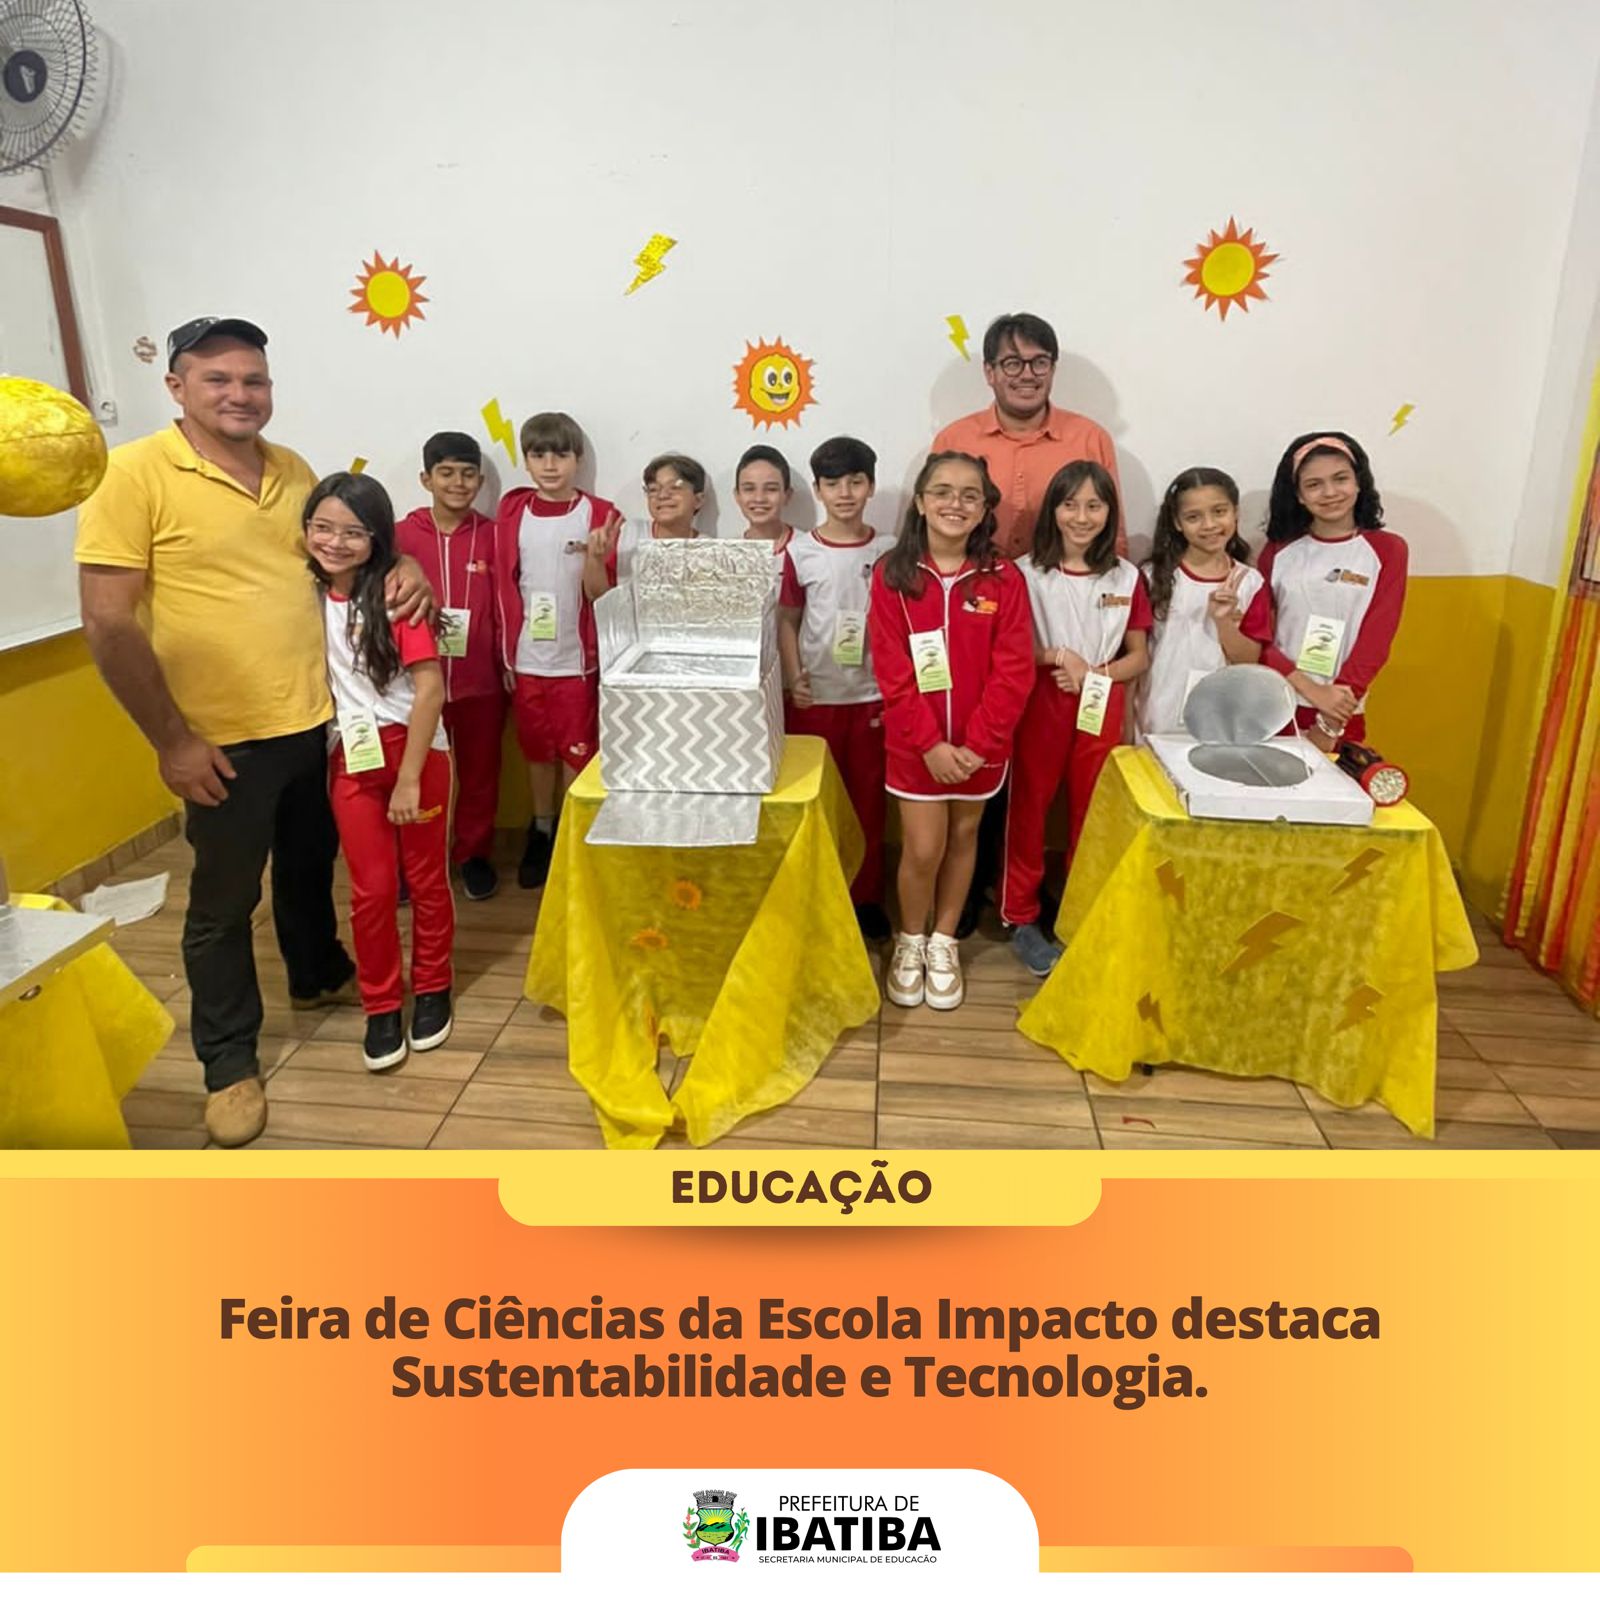 2° Feira de Ciências da Escola Impacto destaca Sustentabilidade e Tecnologia.